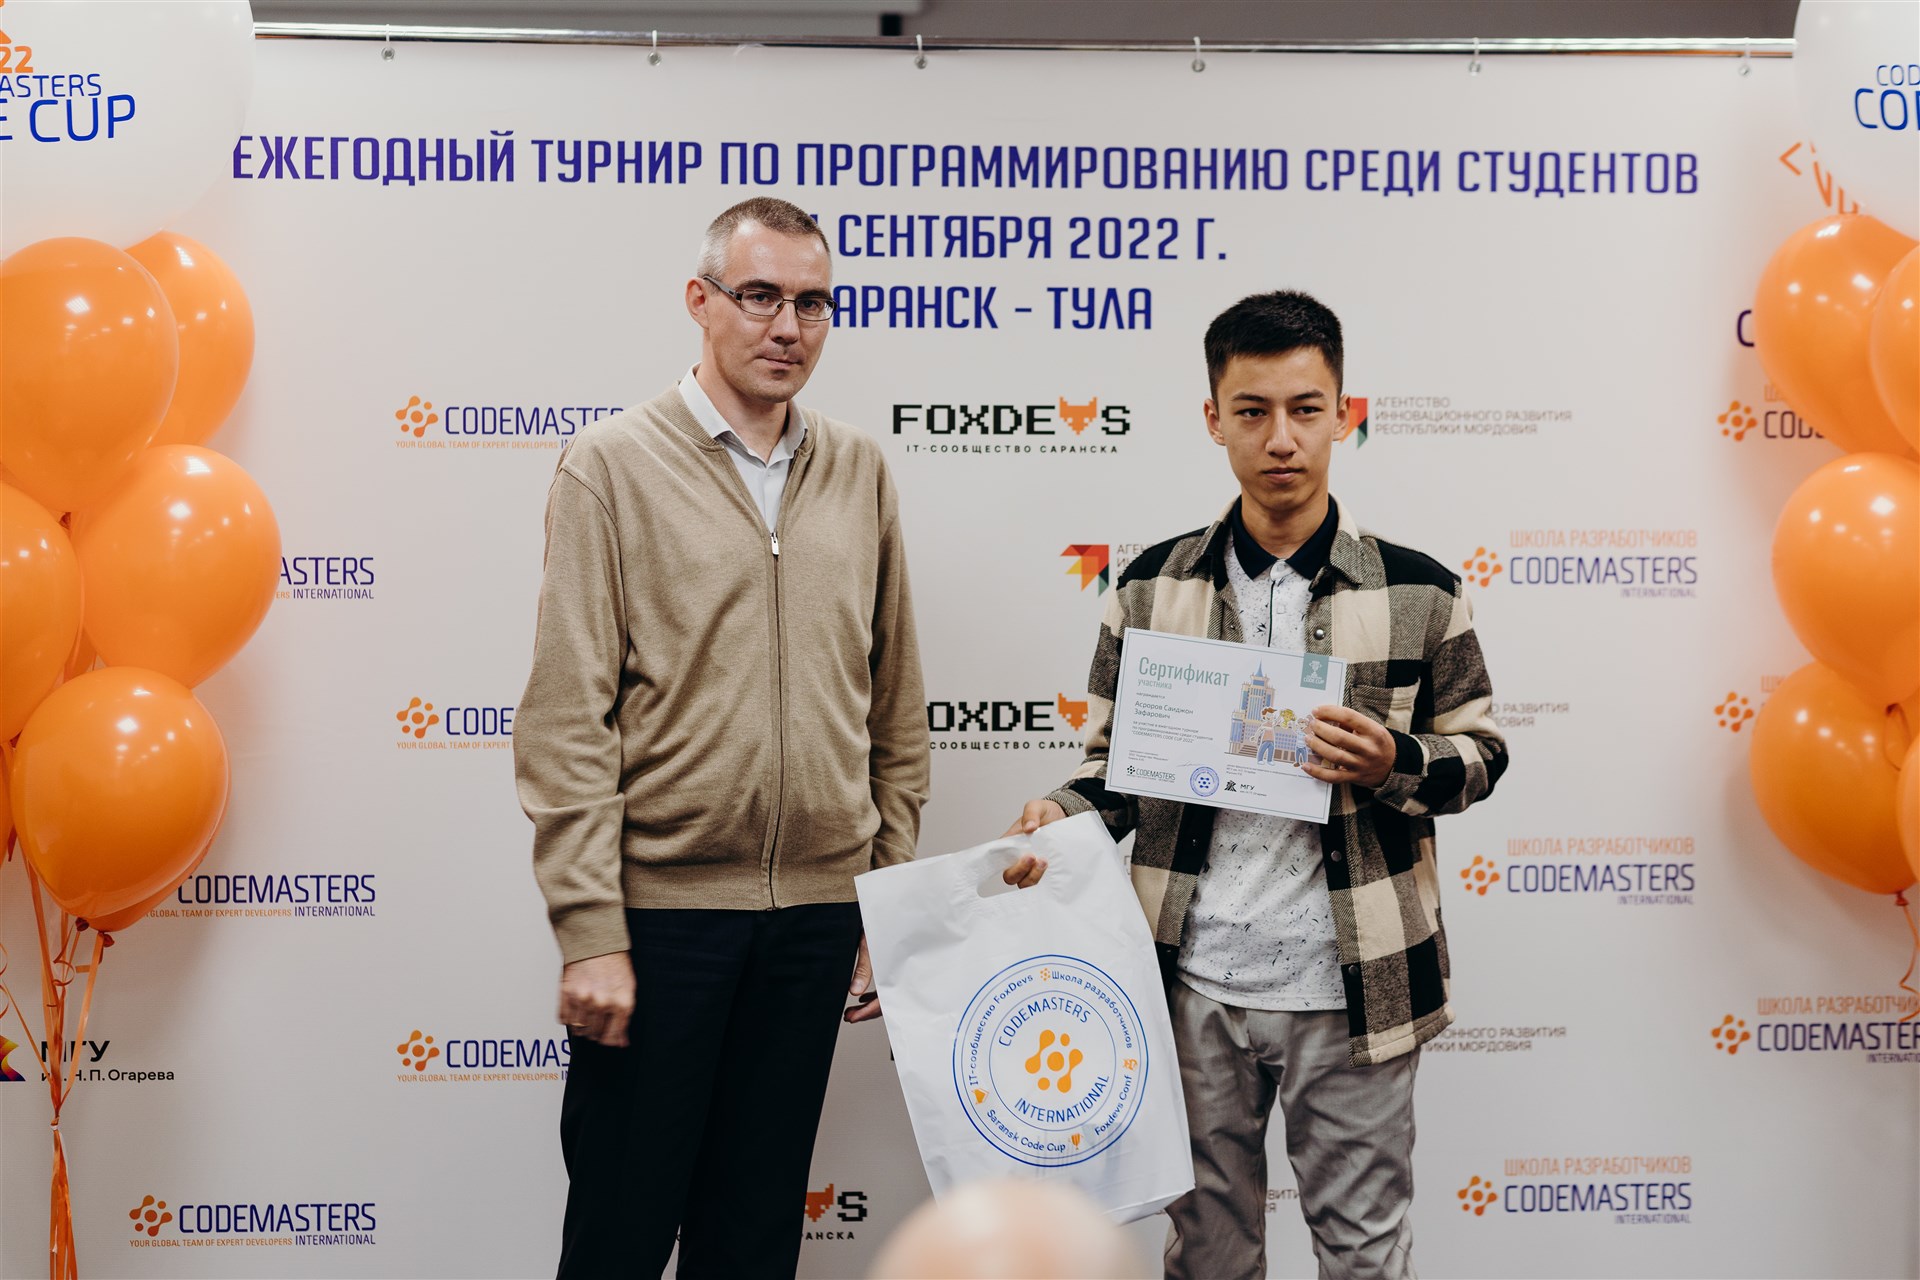 Codemasters Code Cup Саранск 2022 - 6